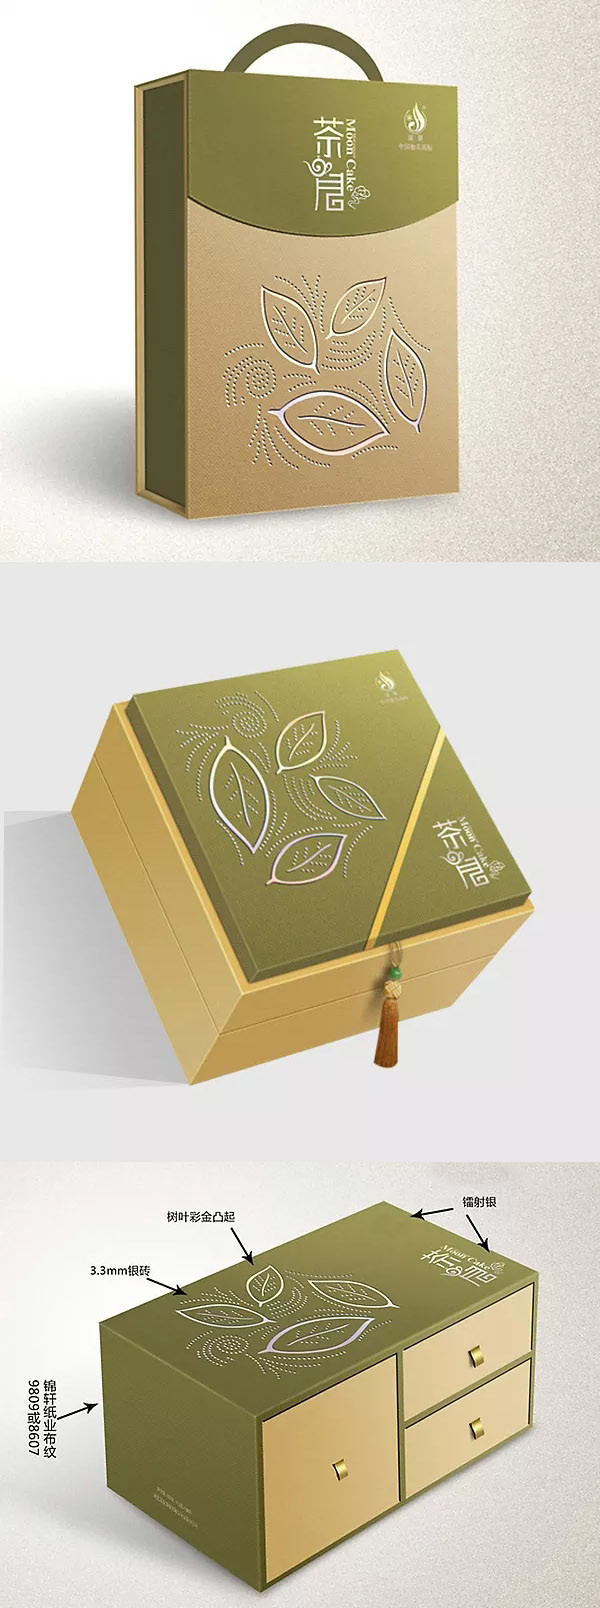 木质茶月饼礼盒设计制作